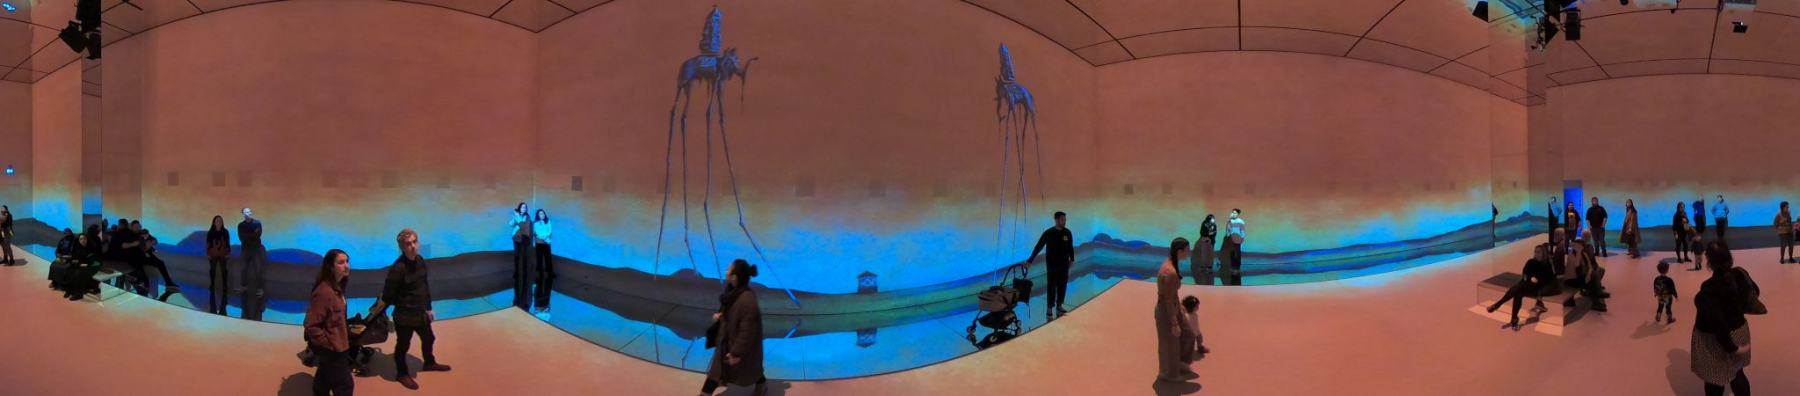 Frameless immersive art show, Marble Arch London, 16-Jan-2023.